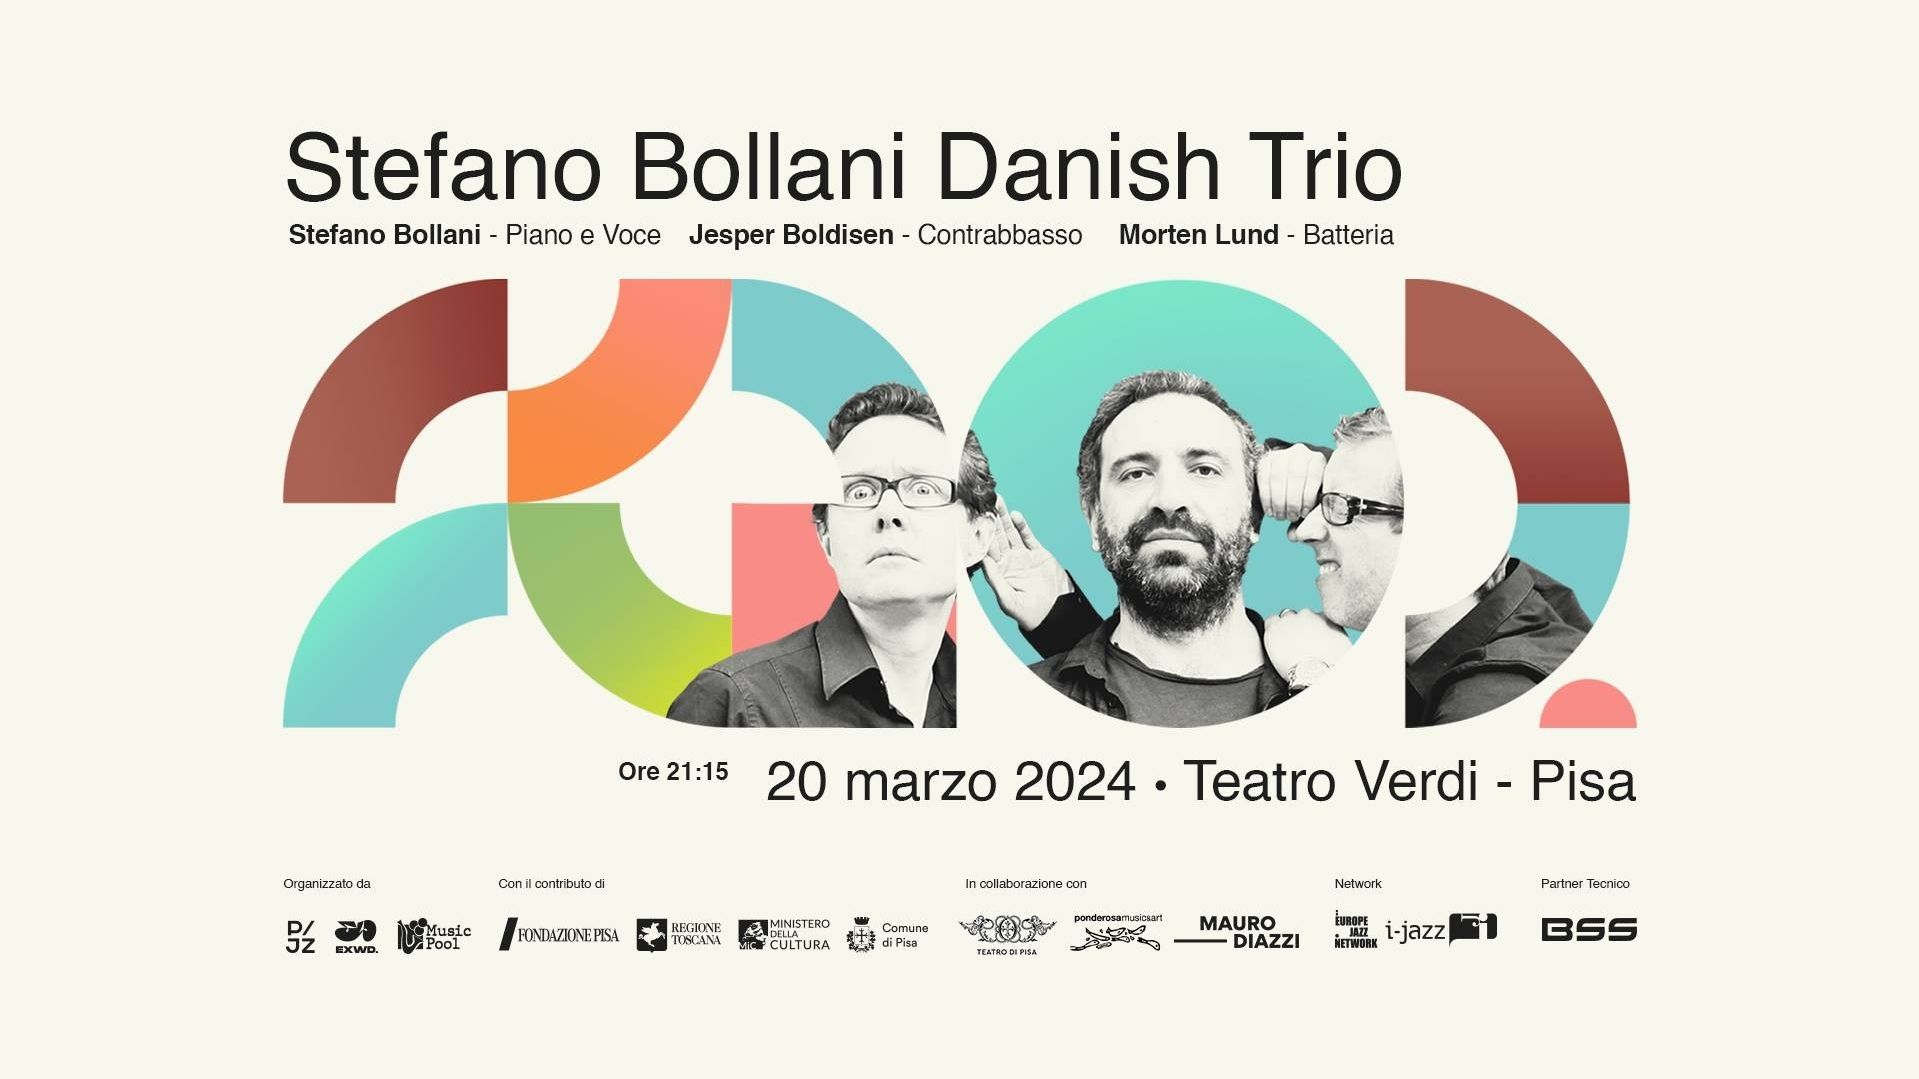 Stefano Bollani Danish Trio